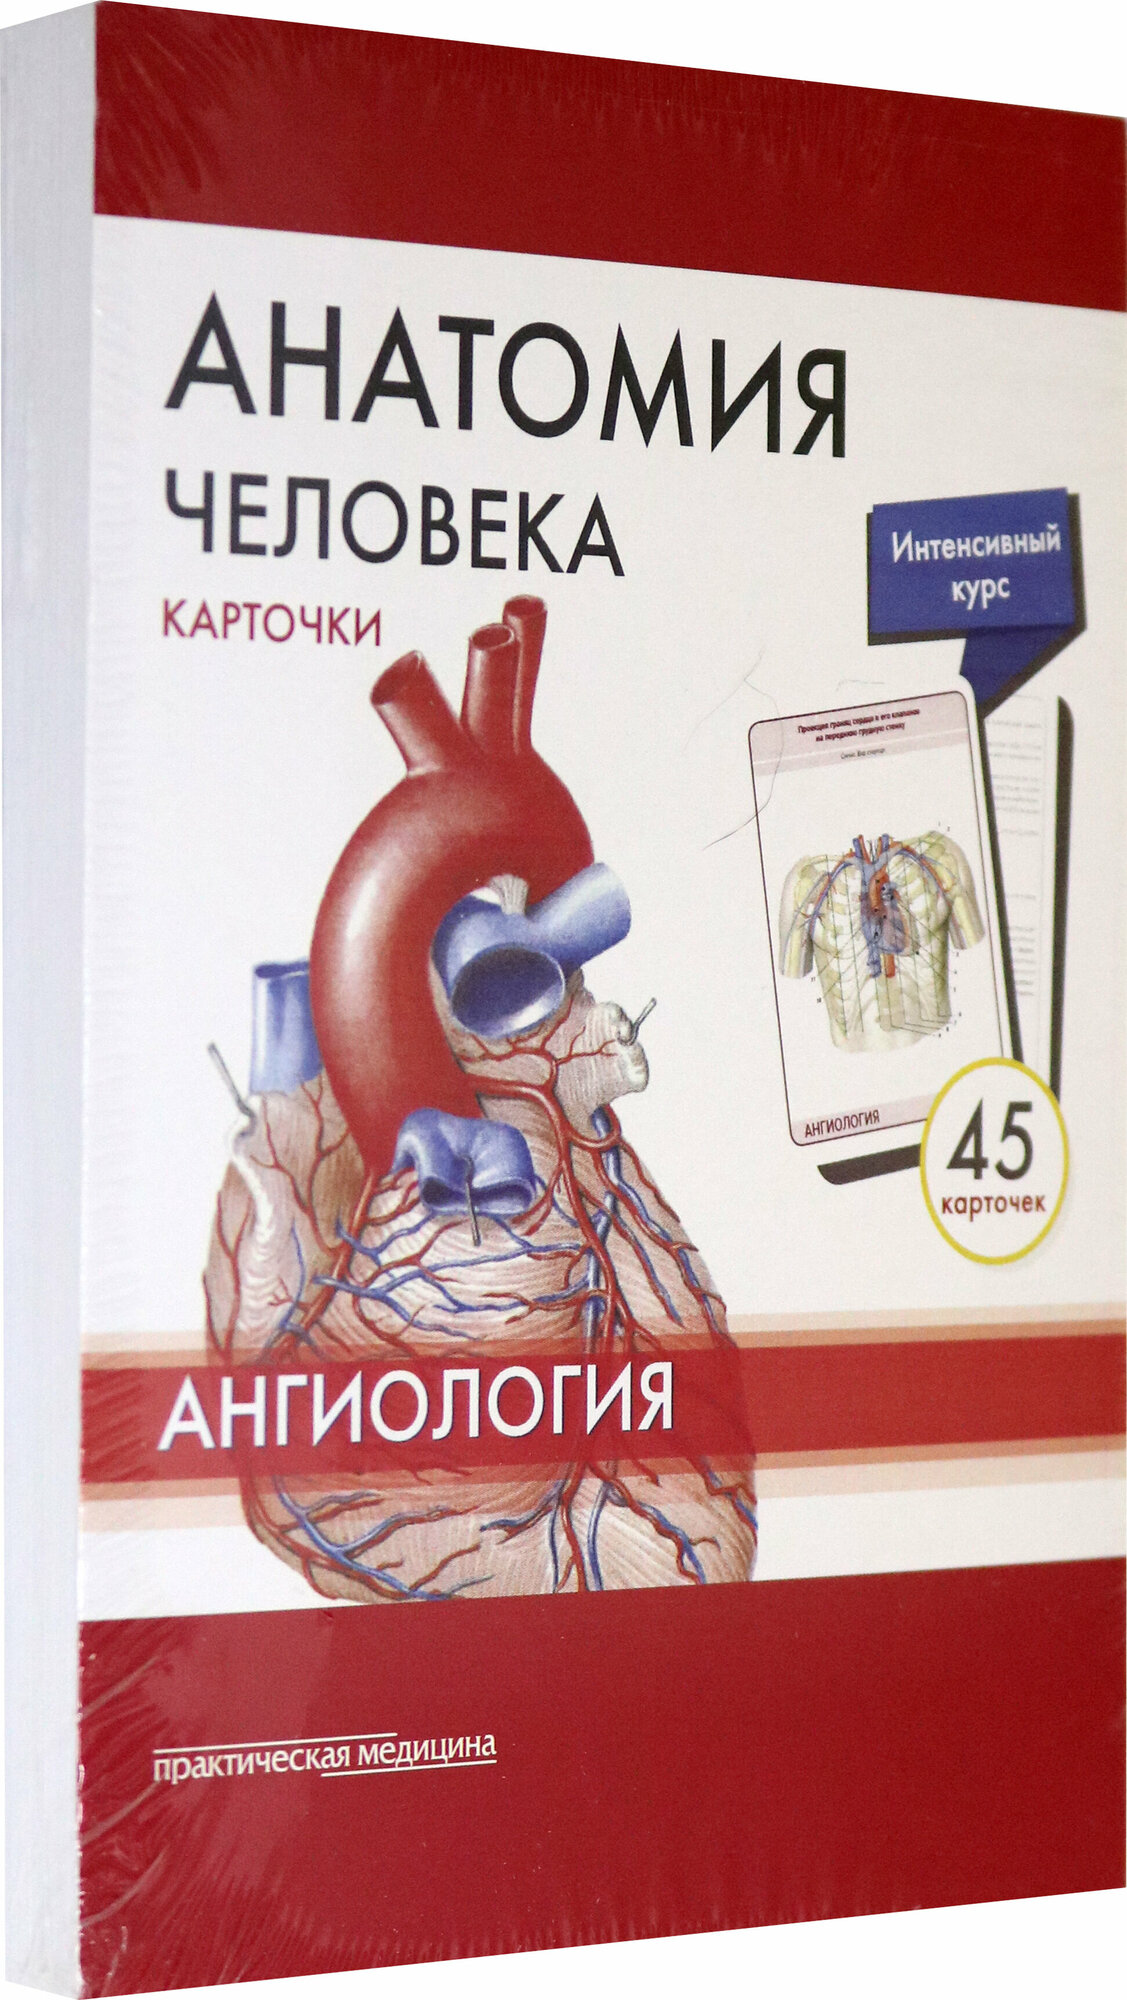 Анатомия человека. Ангиология. Карточки (45 штук) - фото №7